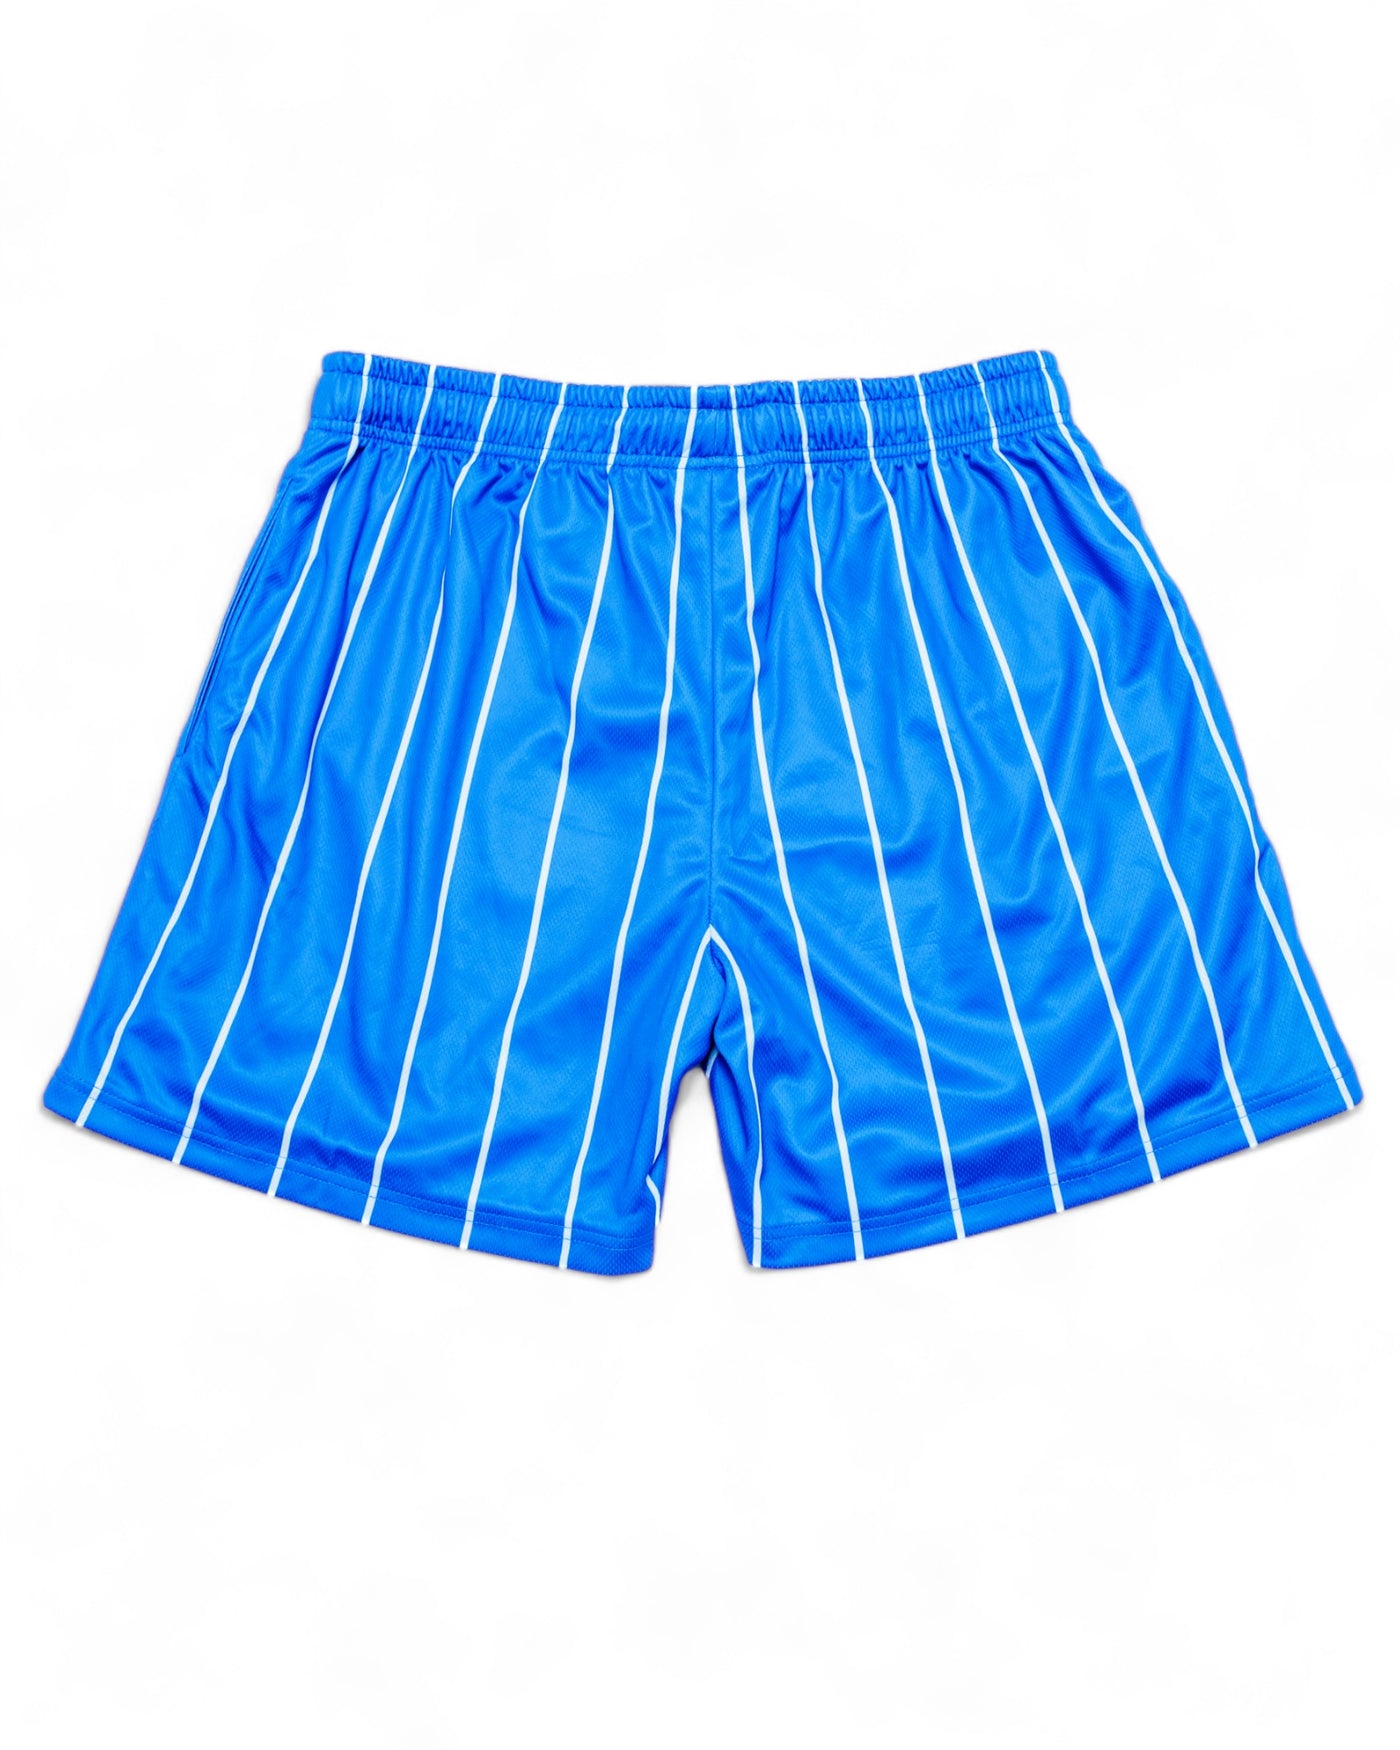 512 Crew Shorts - Blue/white stripes